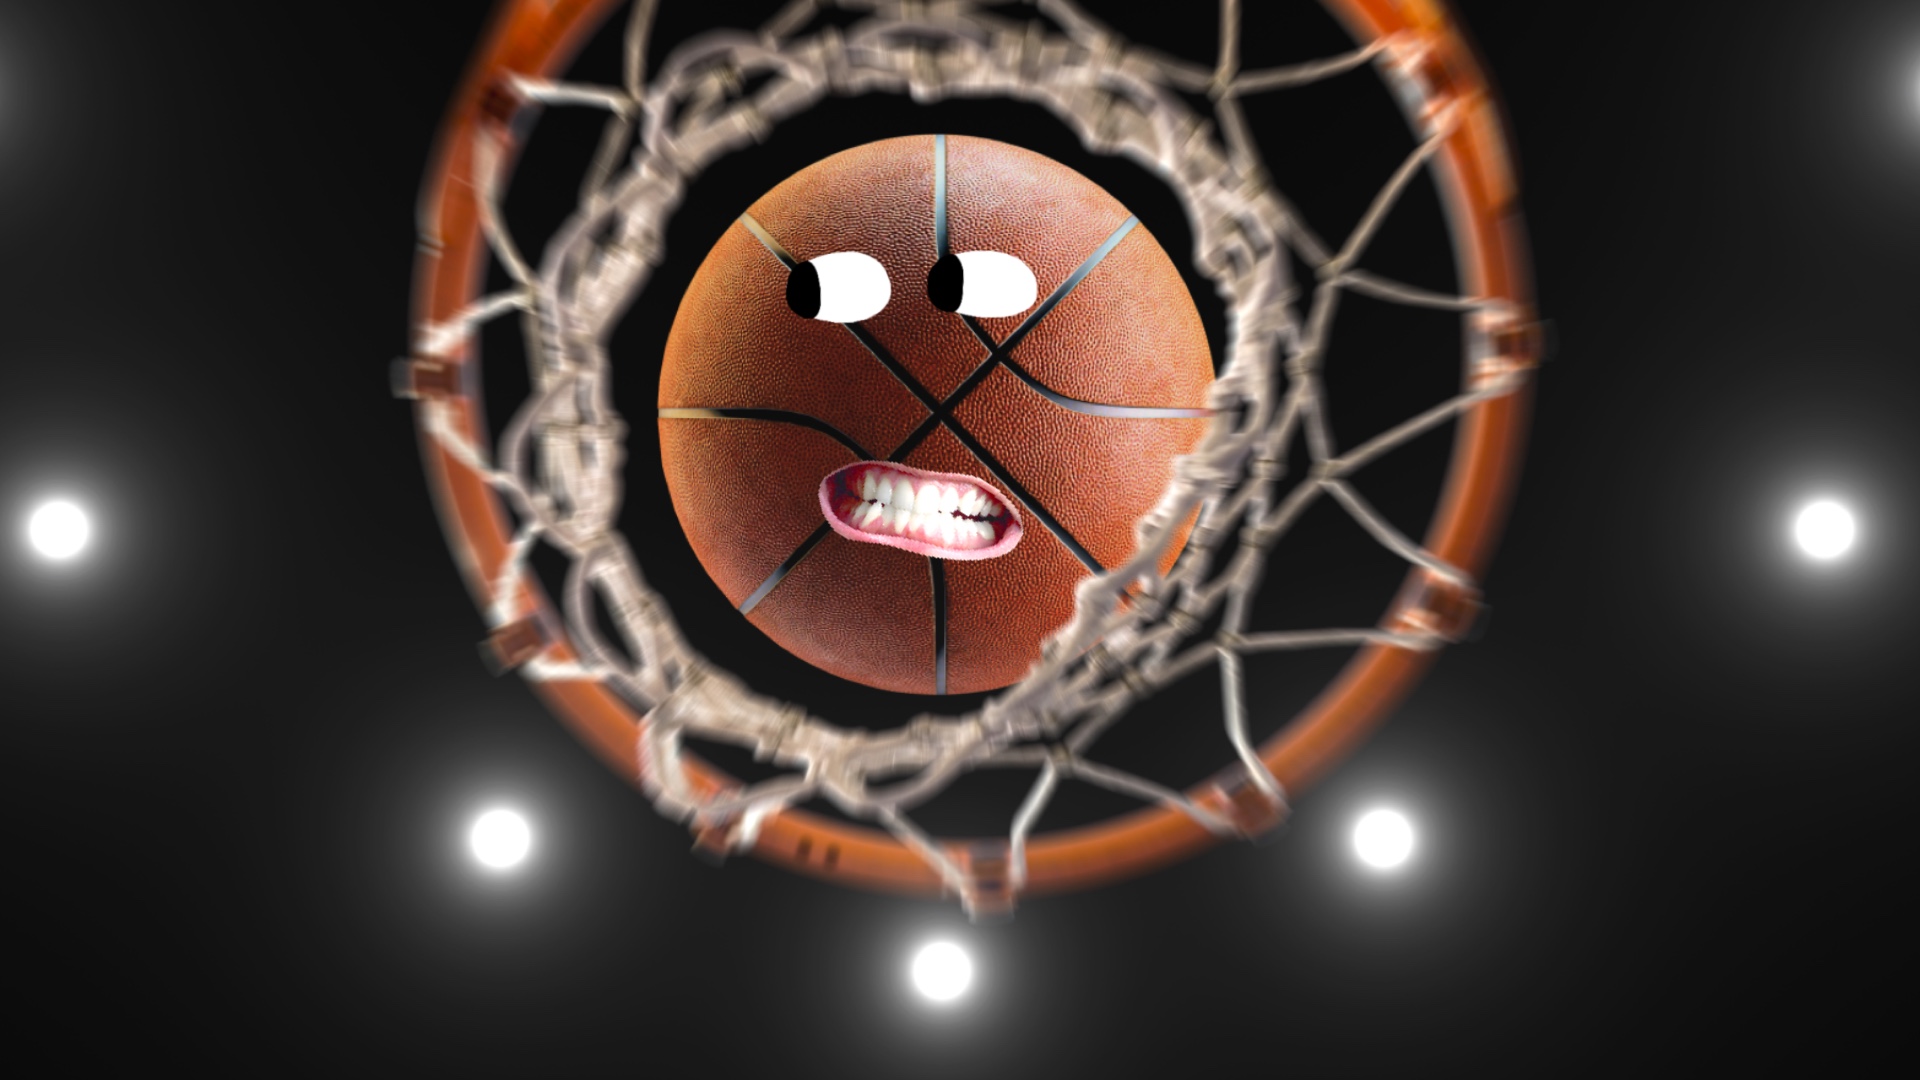 A basketball going through a hoop